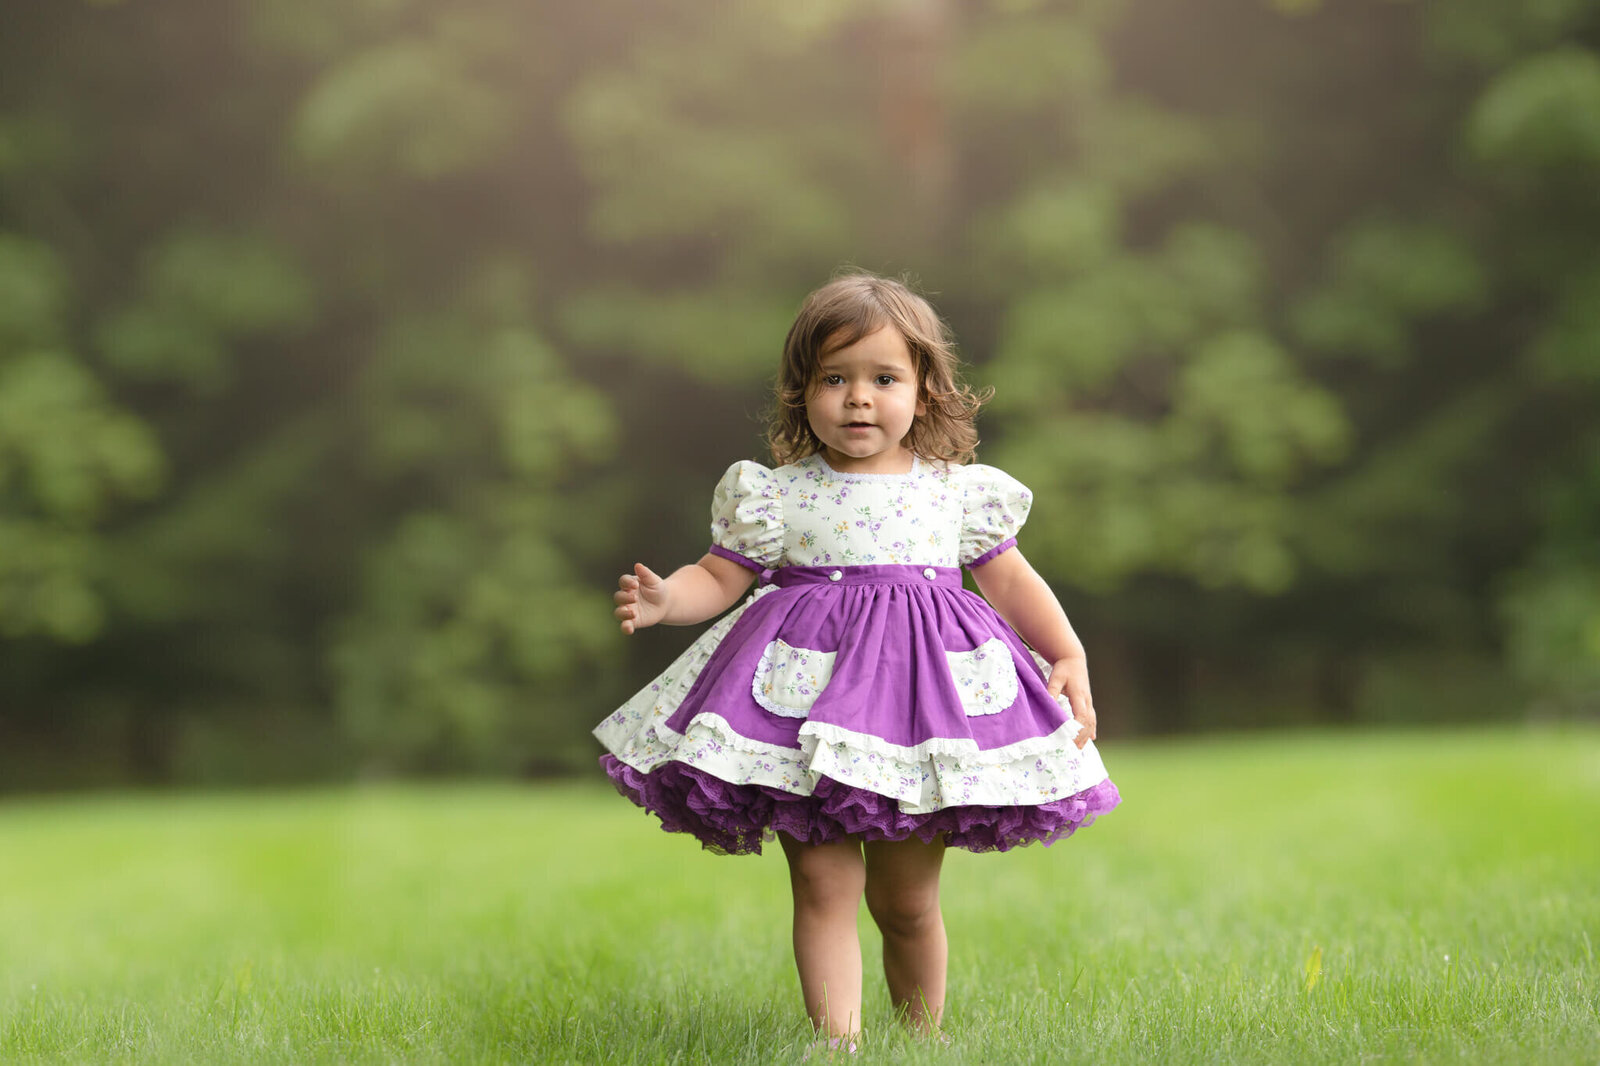 Little girl in purple floral dress walking towards camera